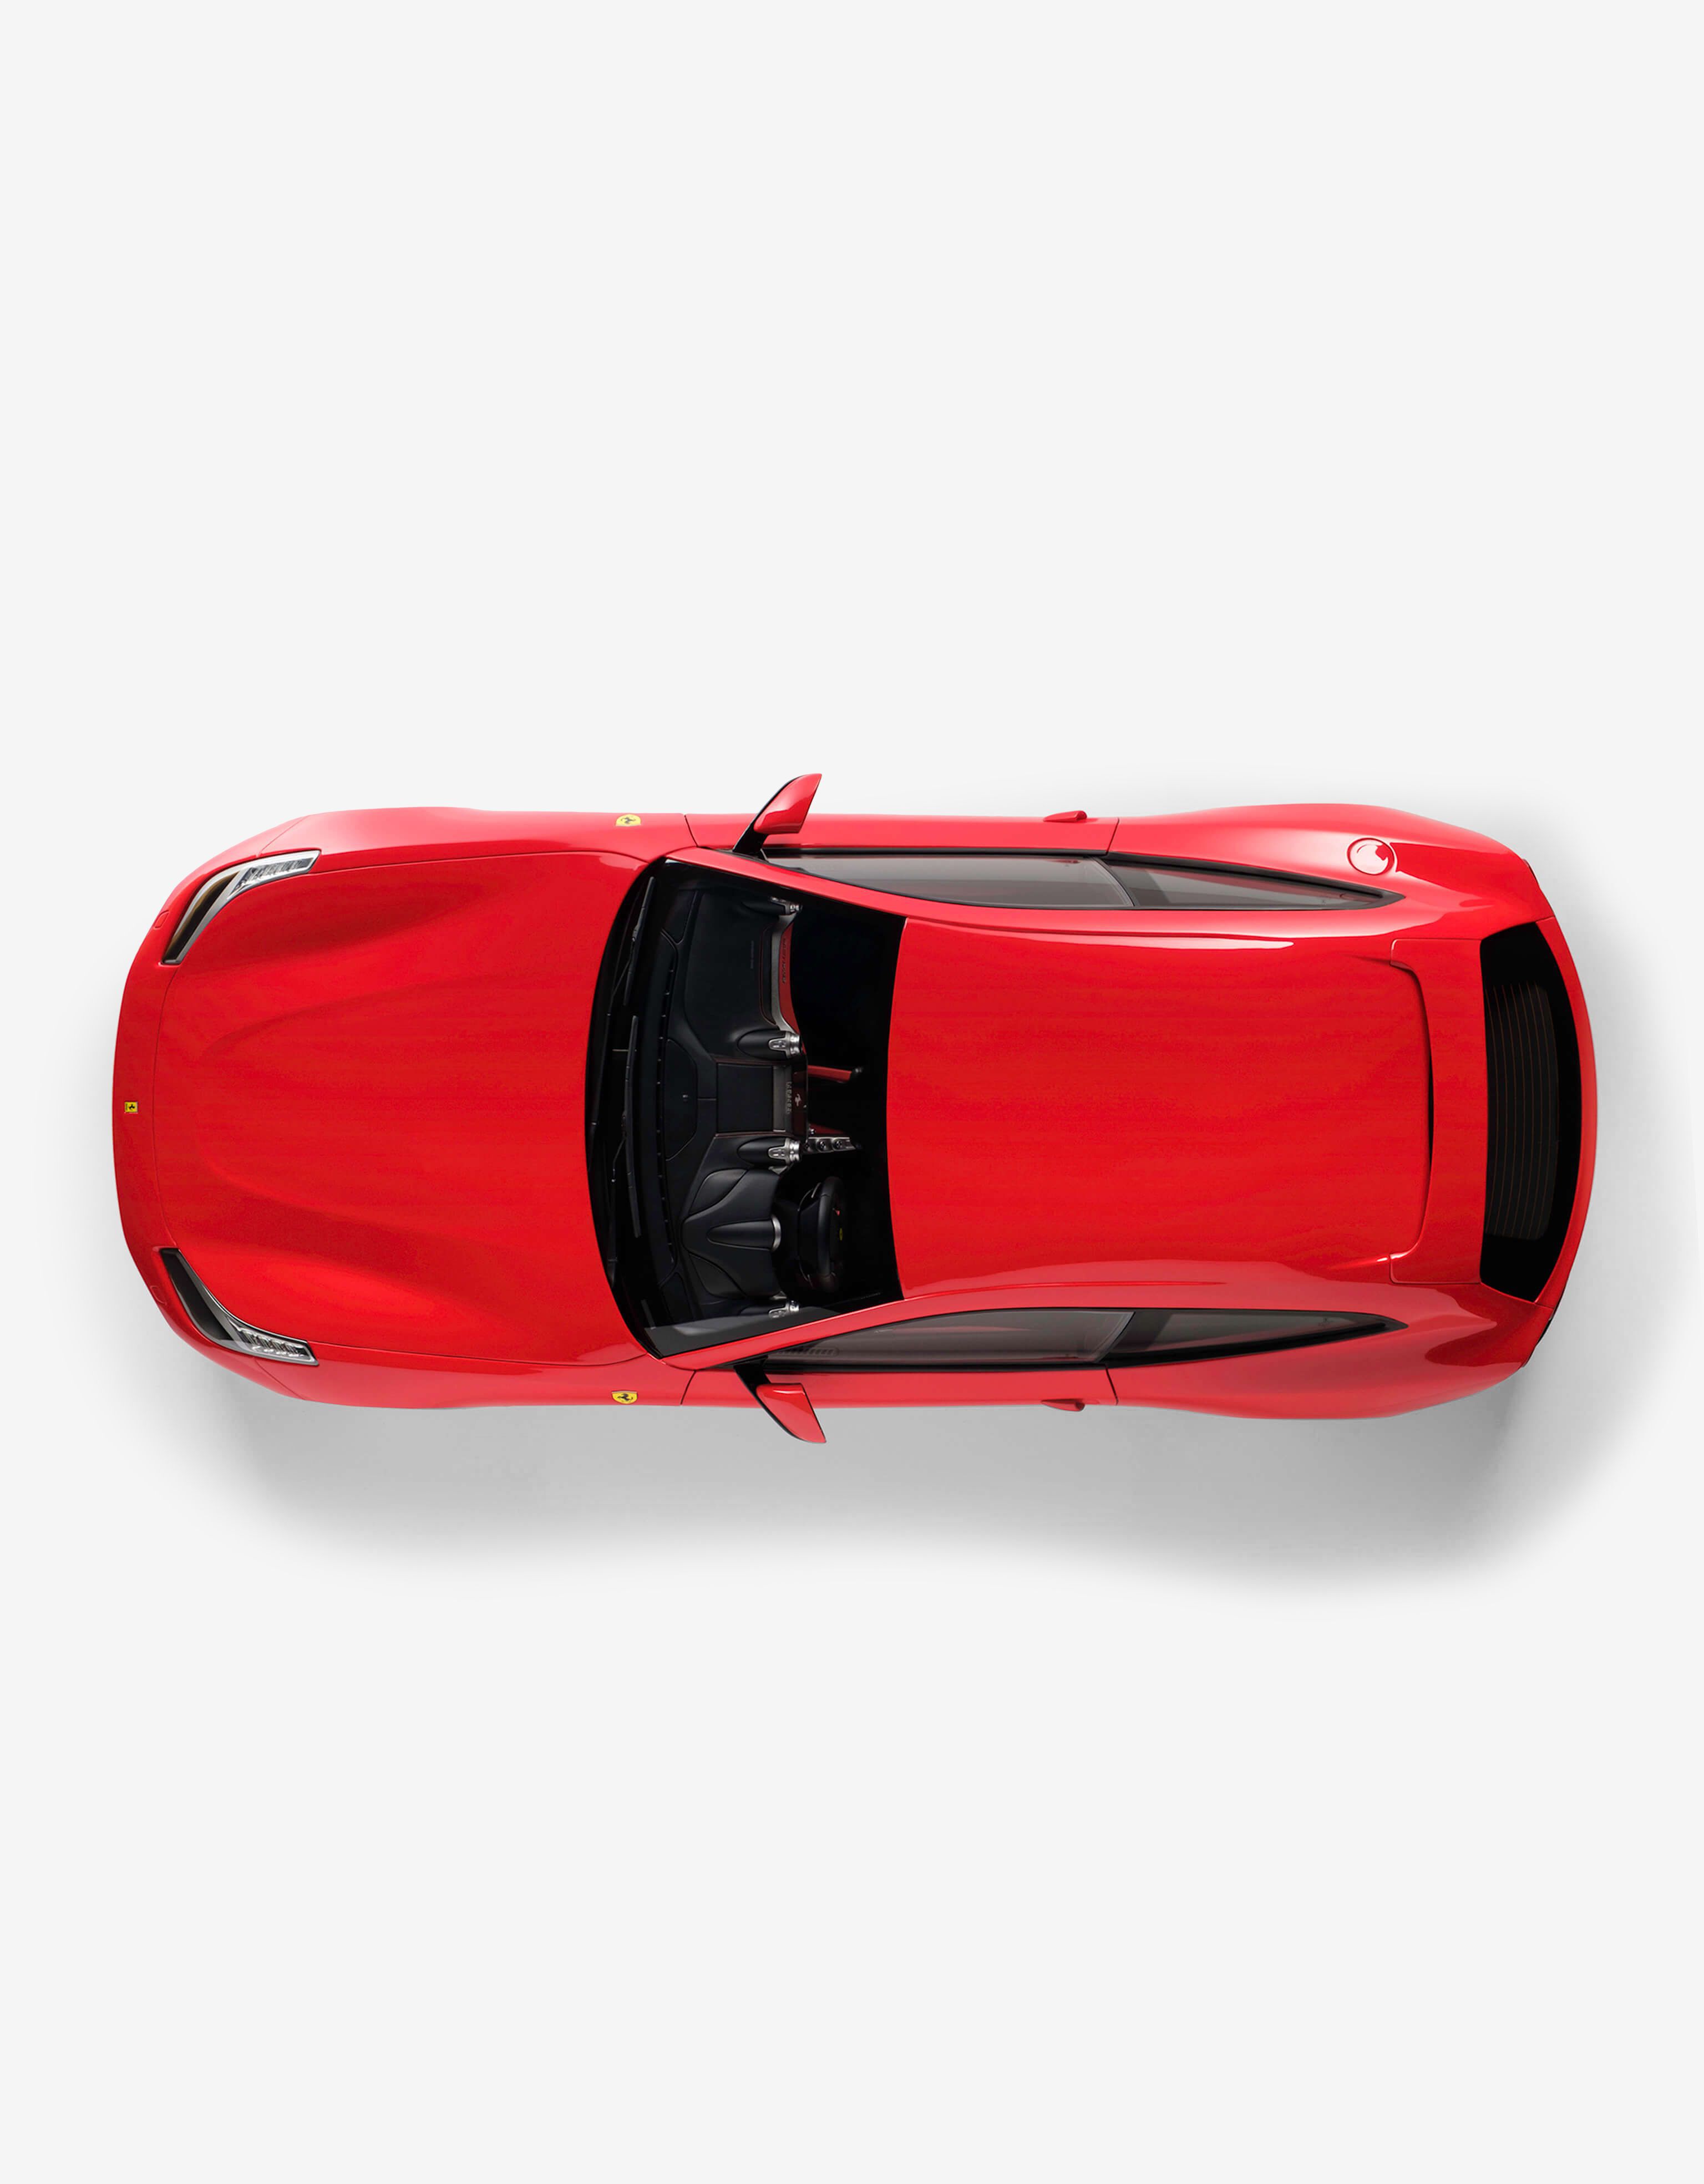 Ferrari Ferrari GTC4 Lusso 1:8スケール モデルカー レッド L7599f